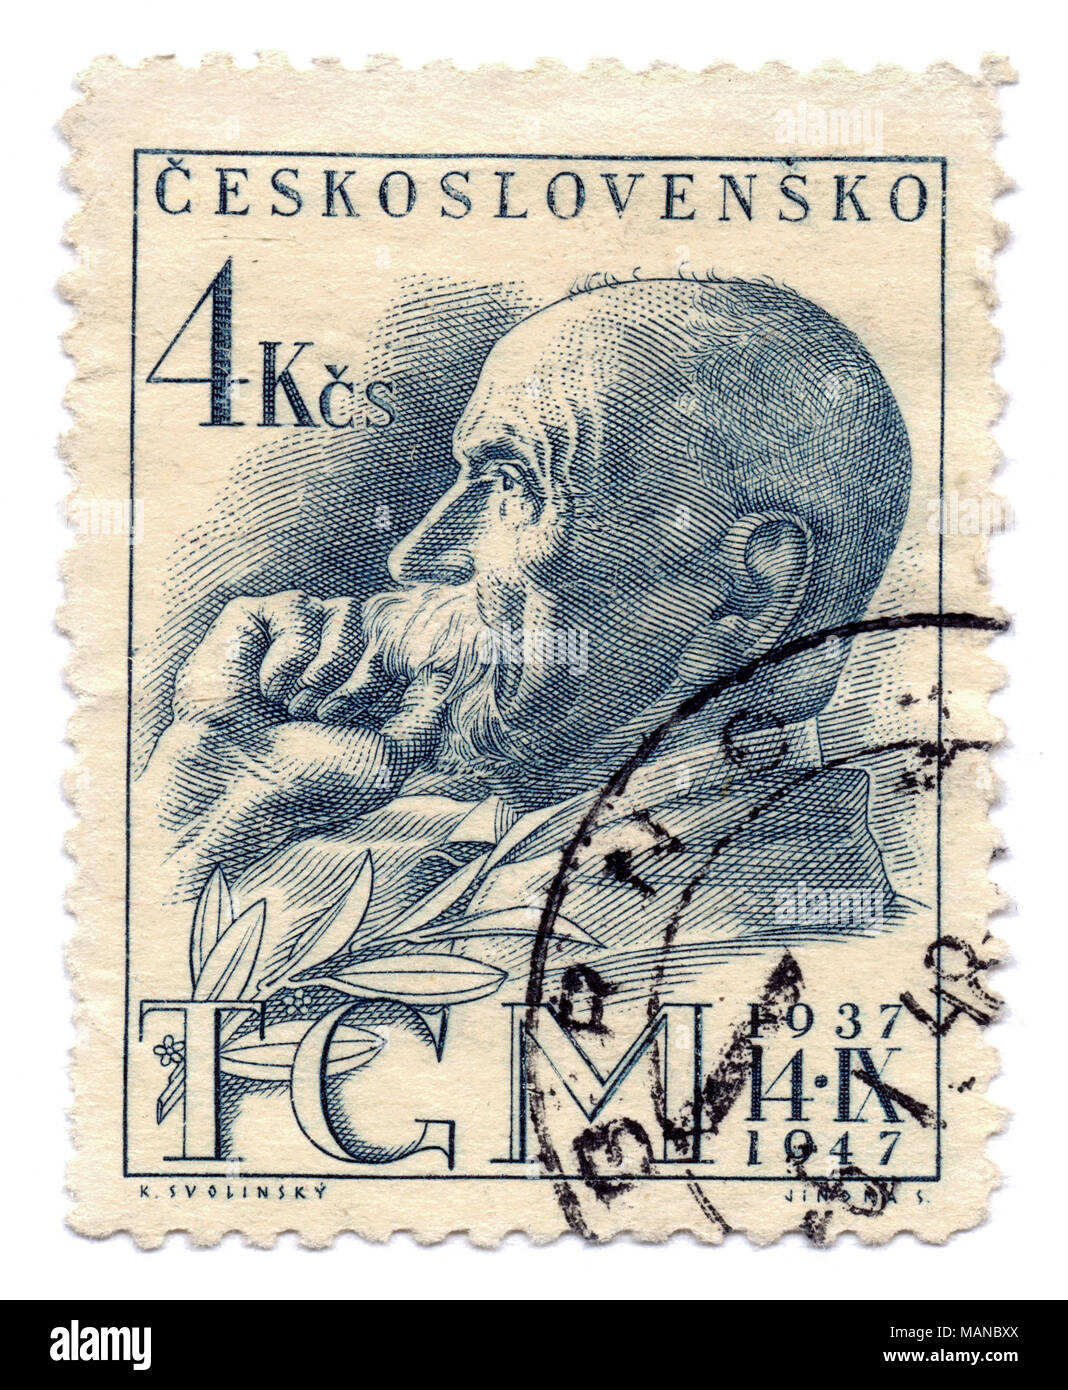 Tomas Garrigue Masaryk, premier président tchécoslovaque (1918-1935) sur le timbre-poste, imprimé à Prague, en Tchécoslovaquie (aujourd'hui République tchèque), 1947. Banque D'Images